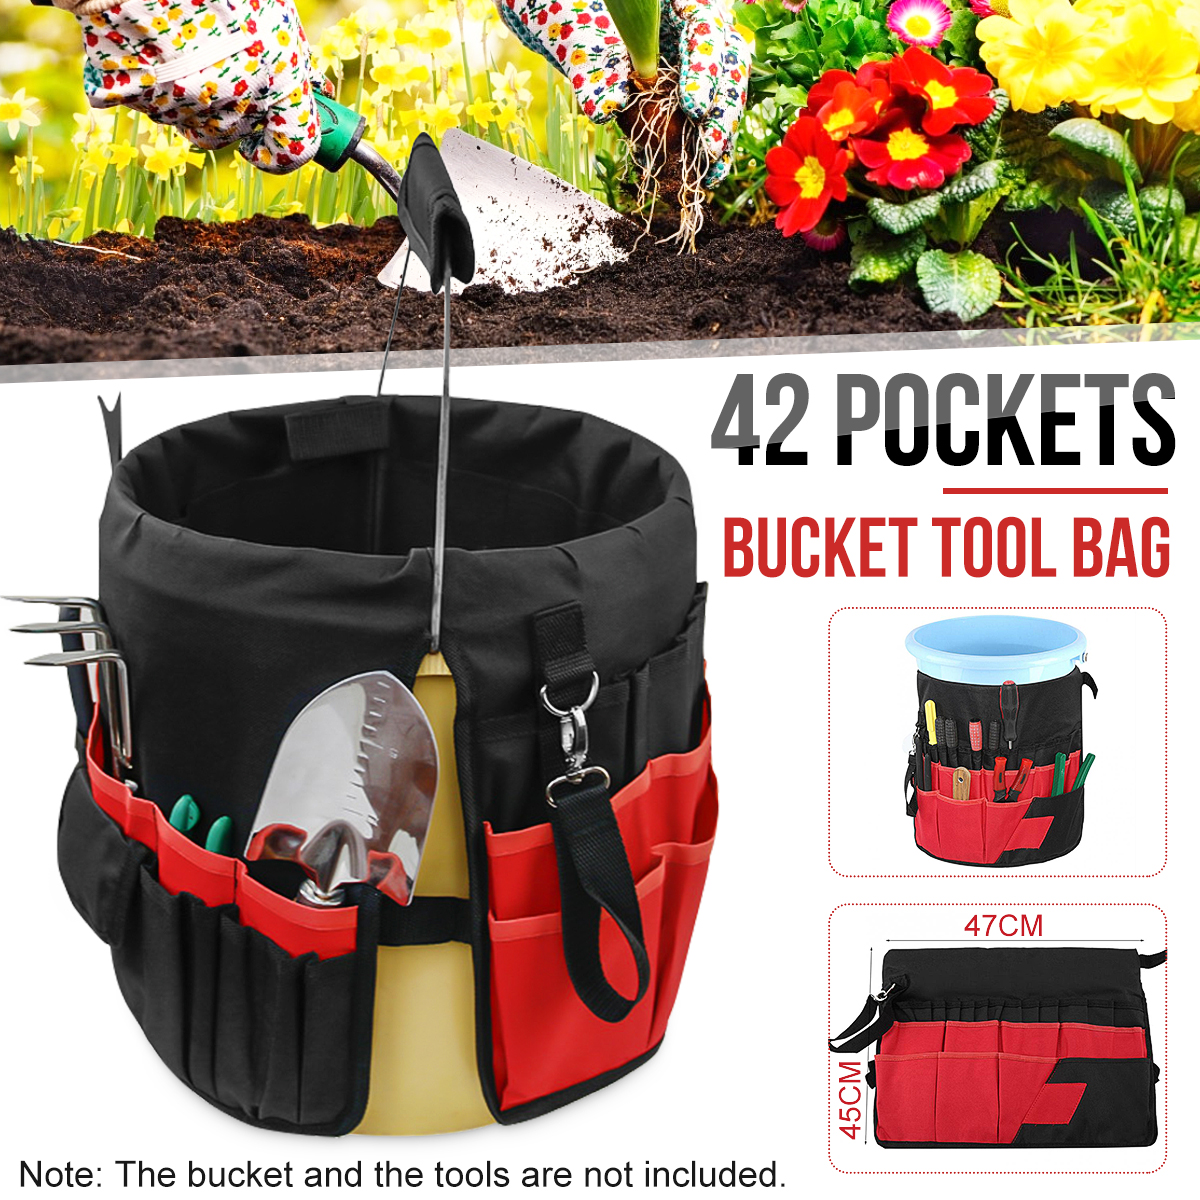 42-Storage-Pockets-Garden-Work-Tool-Bag-For-5-Gallon-Bucket-Organizer-Holder-1680249-1